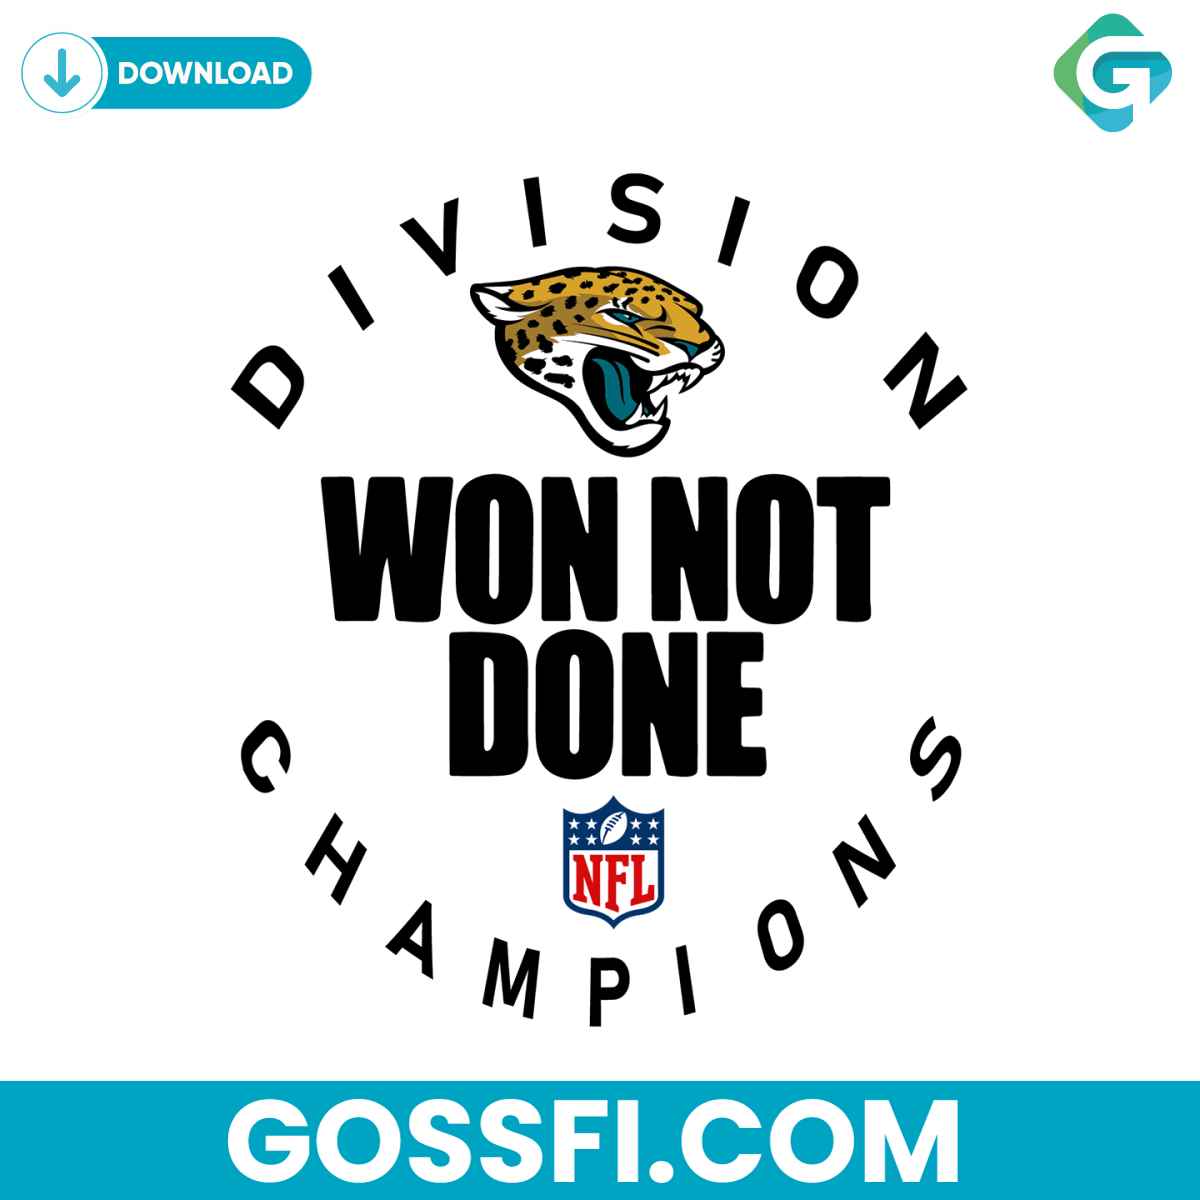 jacksonville-jaguars-nfl-division-won-not-done-champion-svg